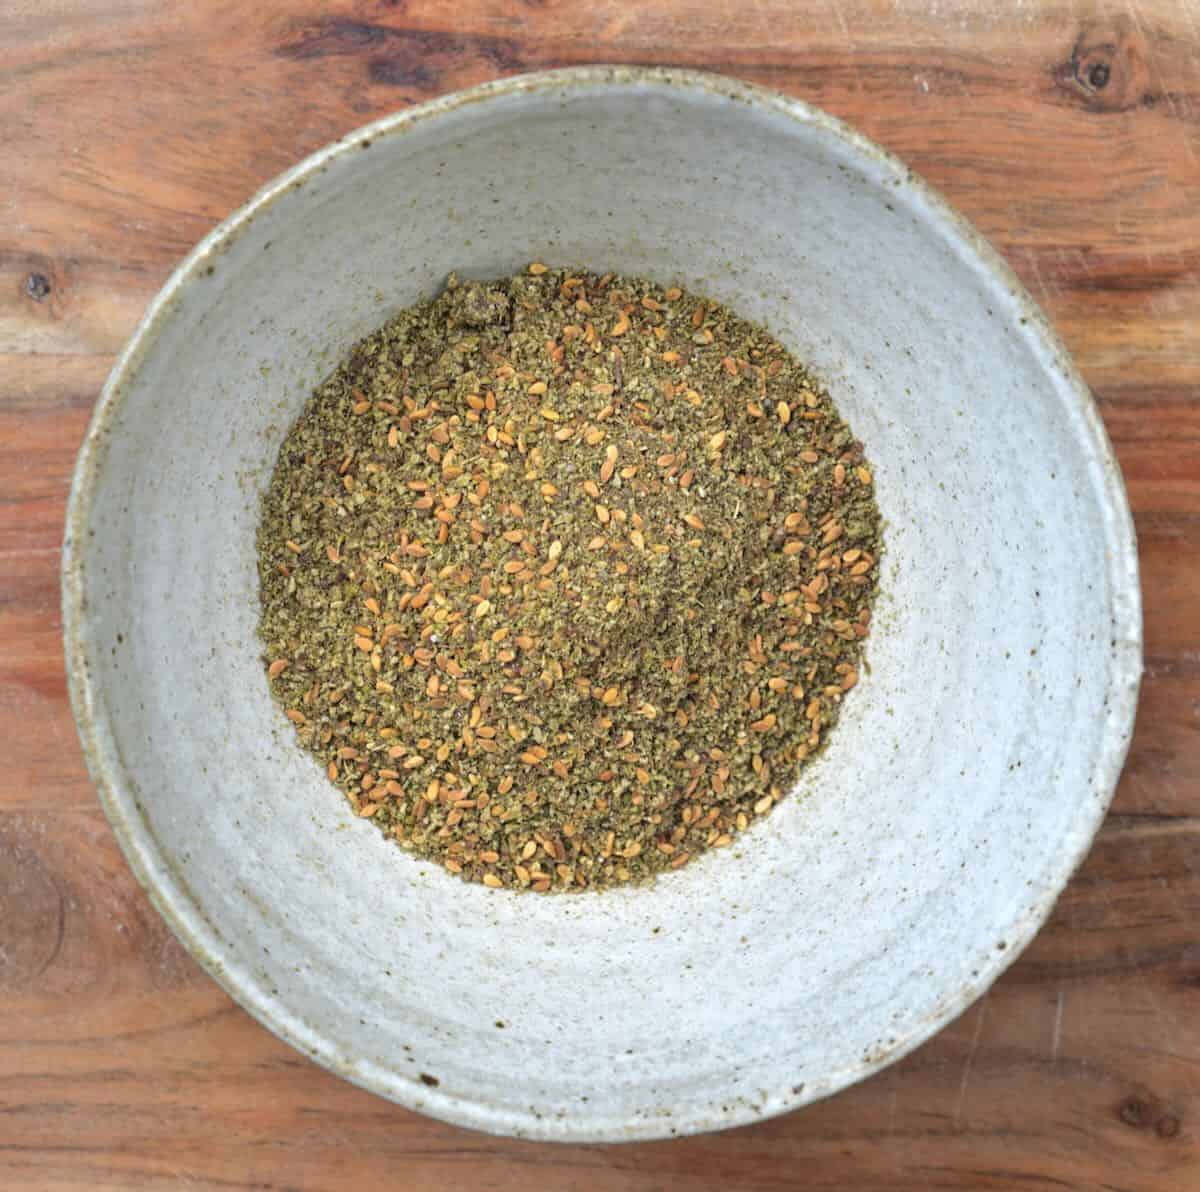 Za'atar spice in a small bowl.